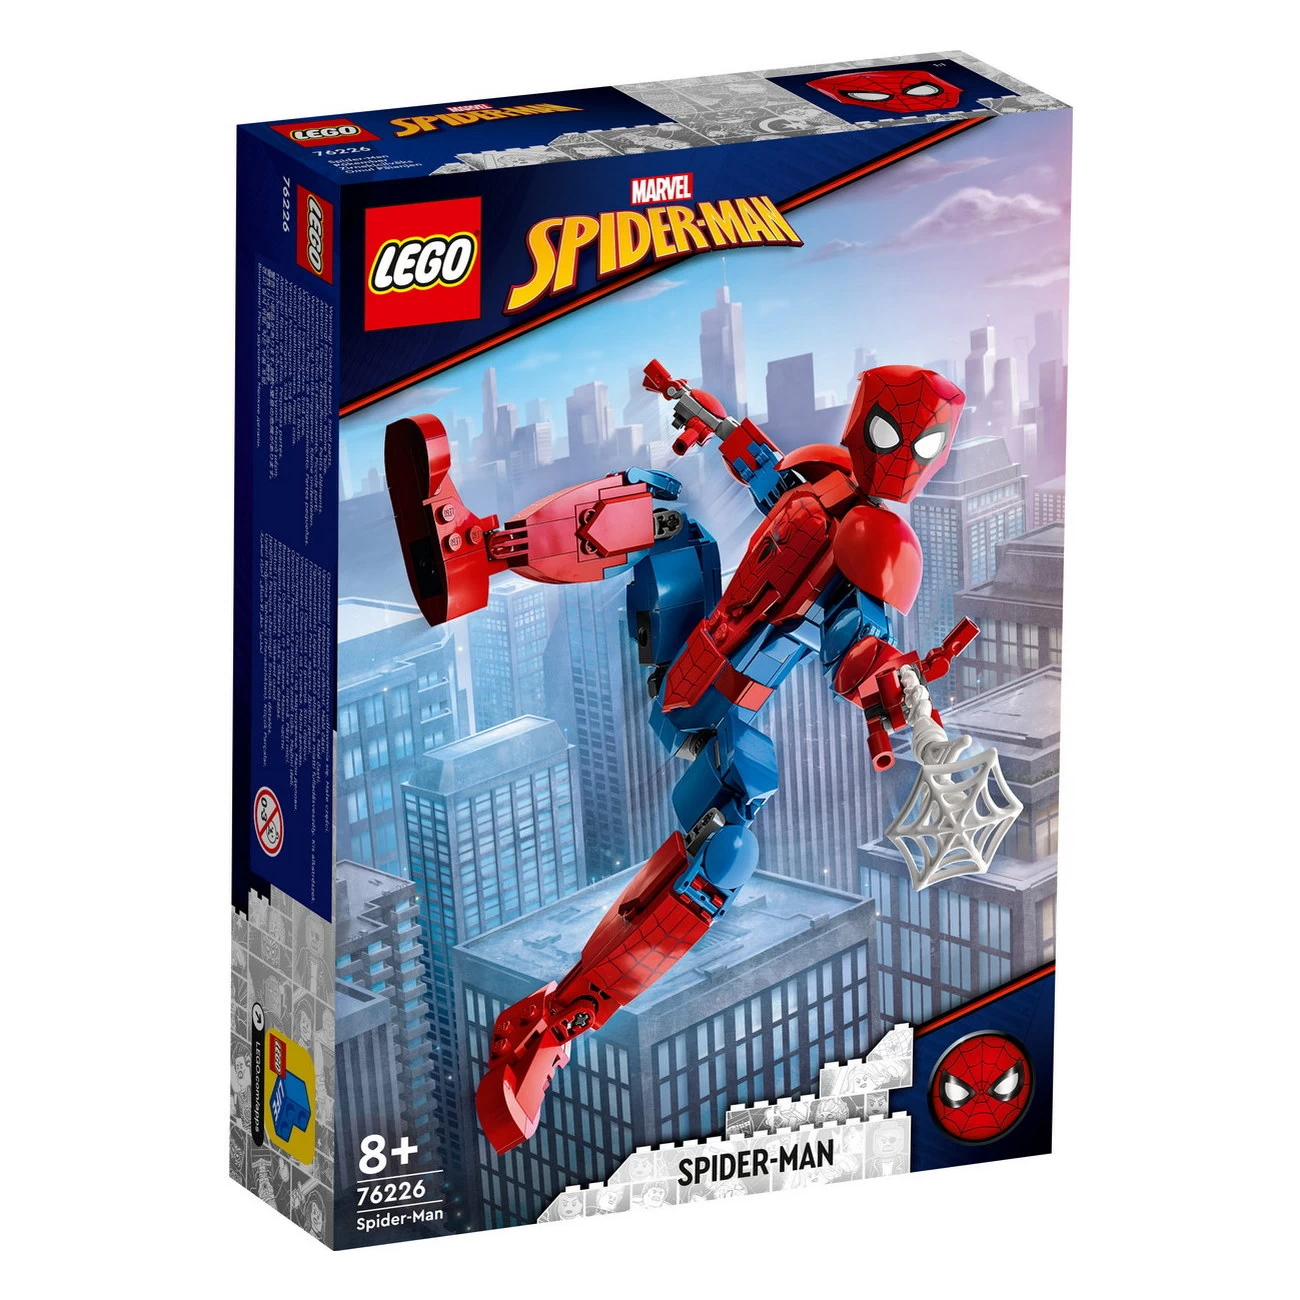 LEGO Spiderman 76226 - Spider-Man Figur